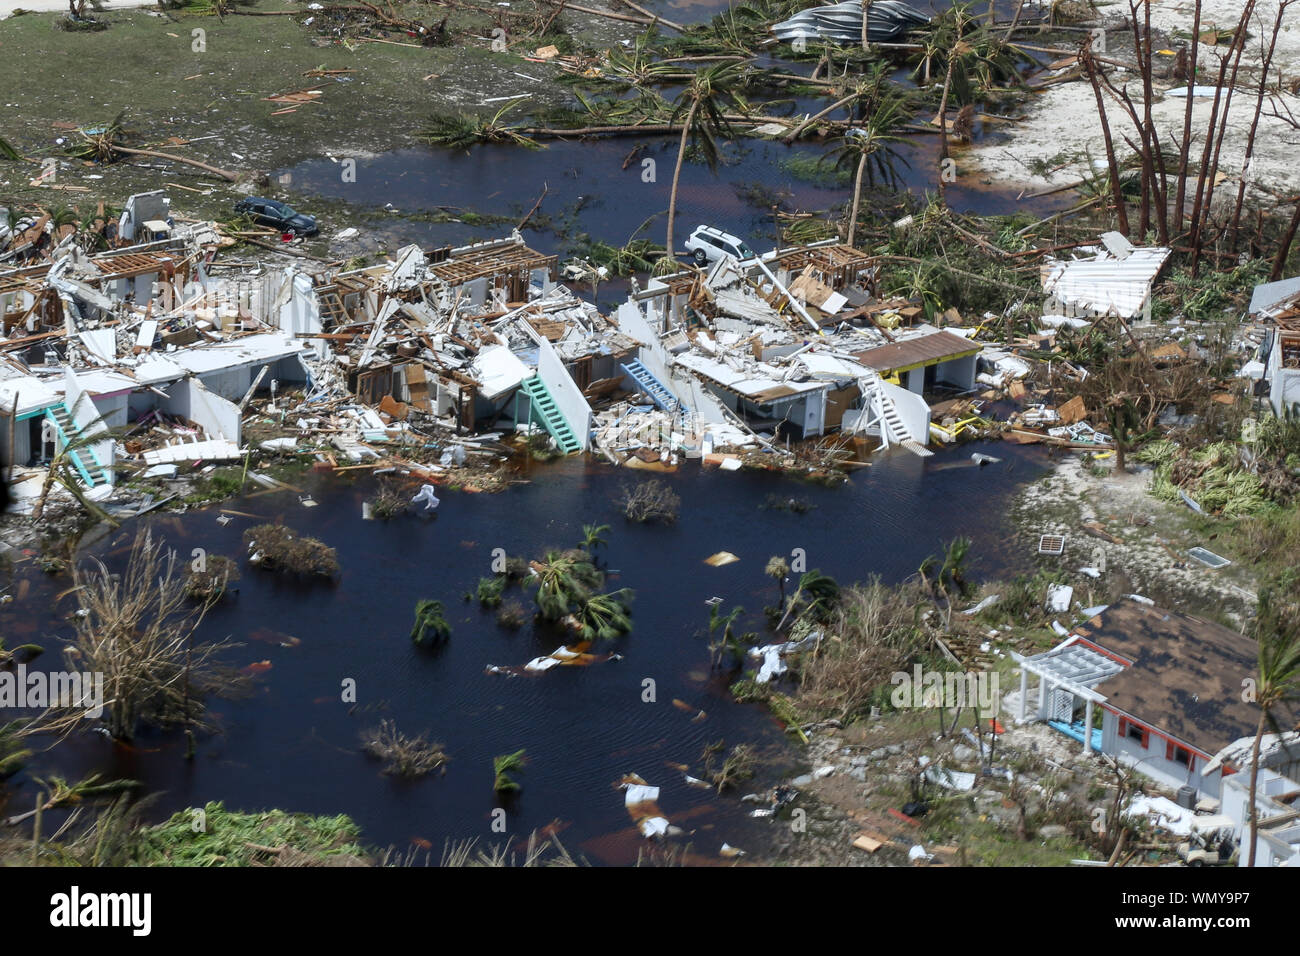 Vista aérea desde helicóptero de la Guardia Costera estadounidense de búsqueda y salvamento y apoyar los esfuerzos de ayuda humanitaria en las Bahamas después del huracán Dorian. (9-4-19) Foto de stock